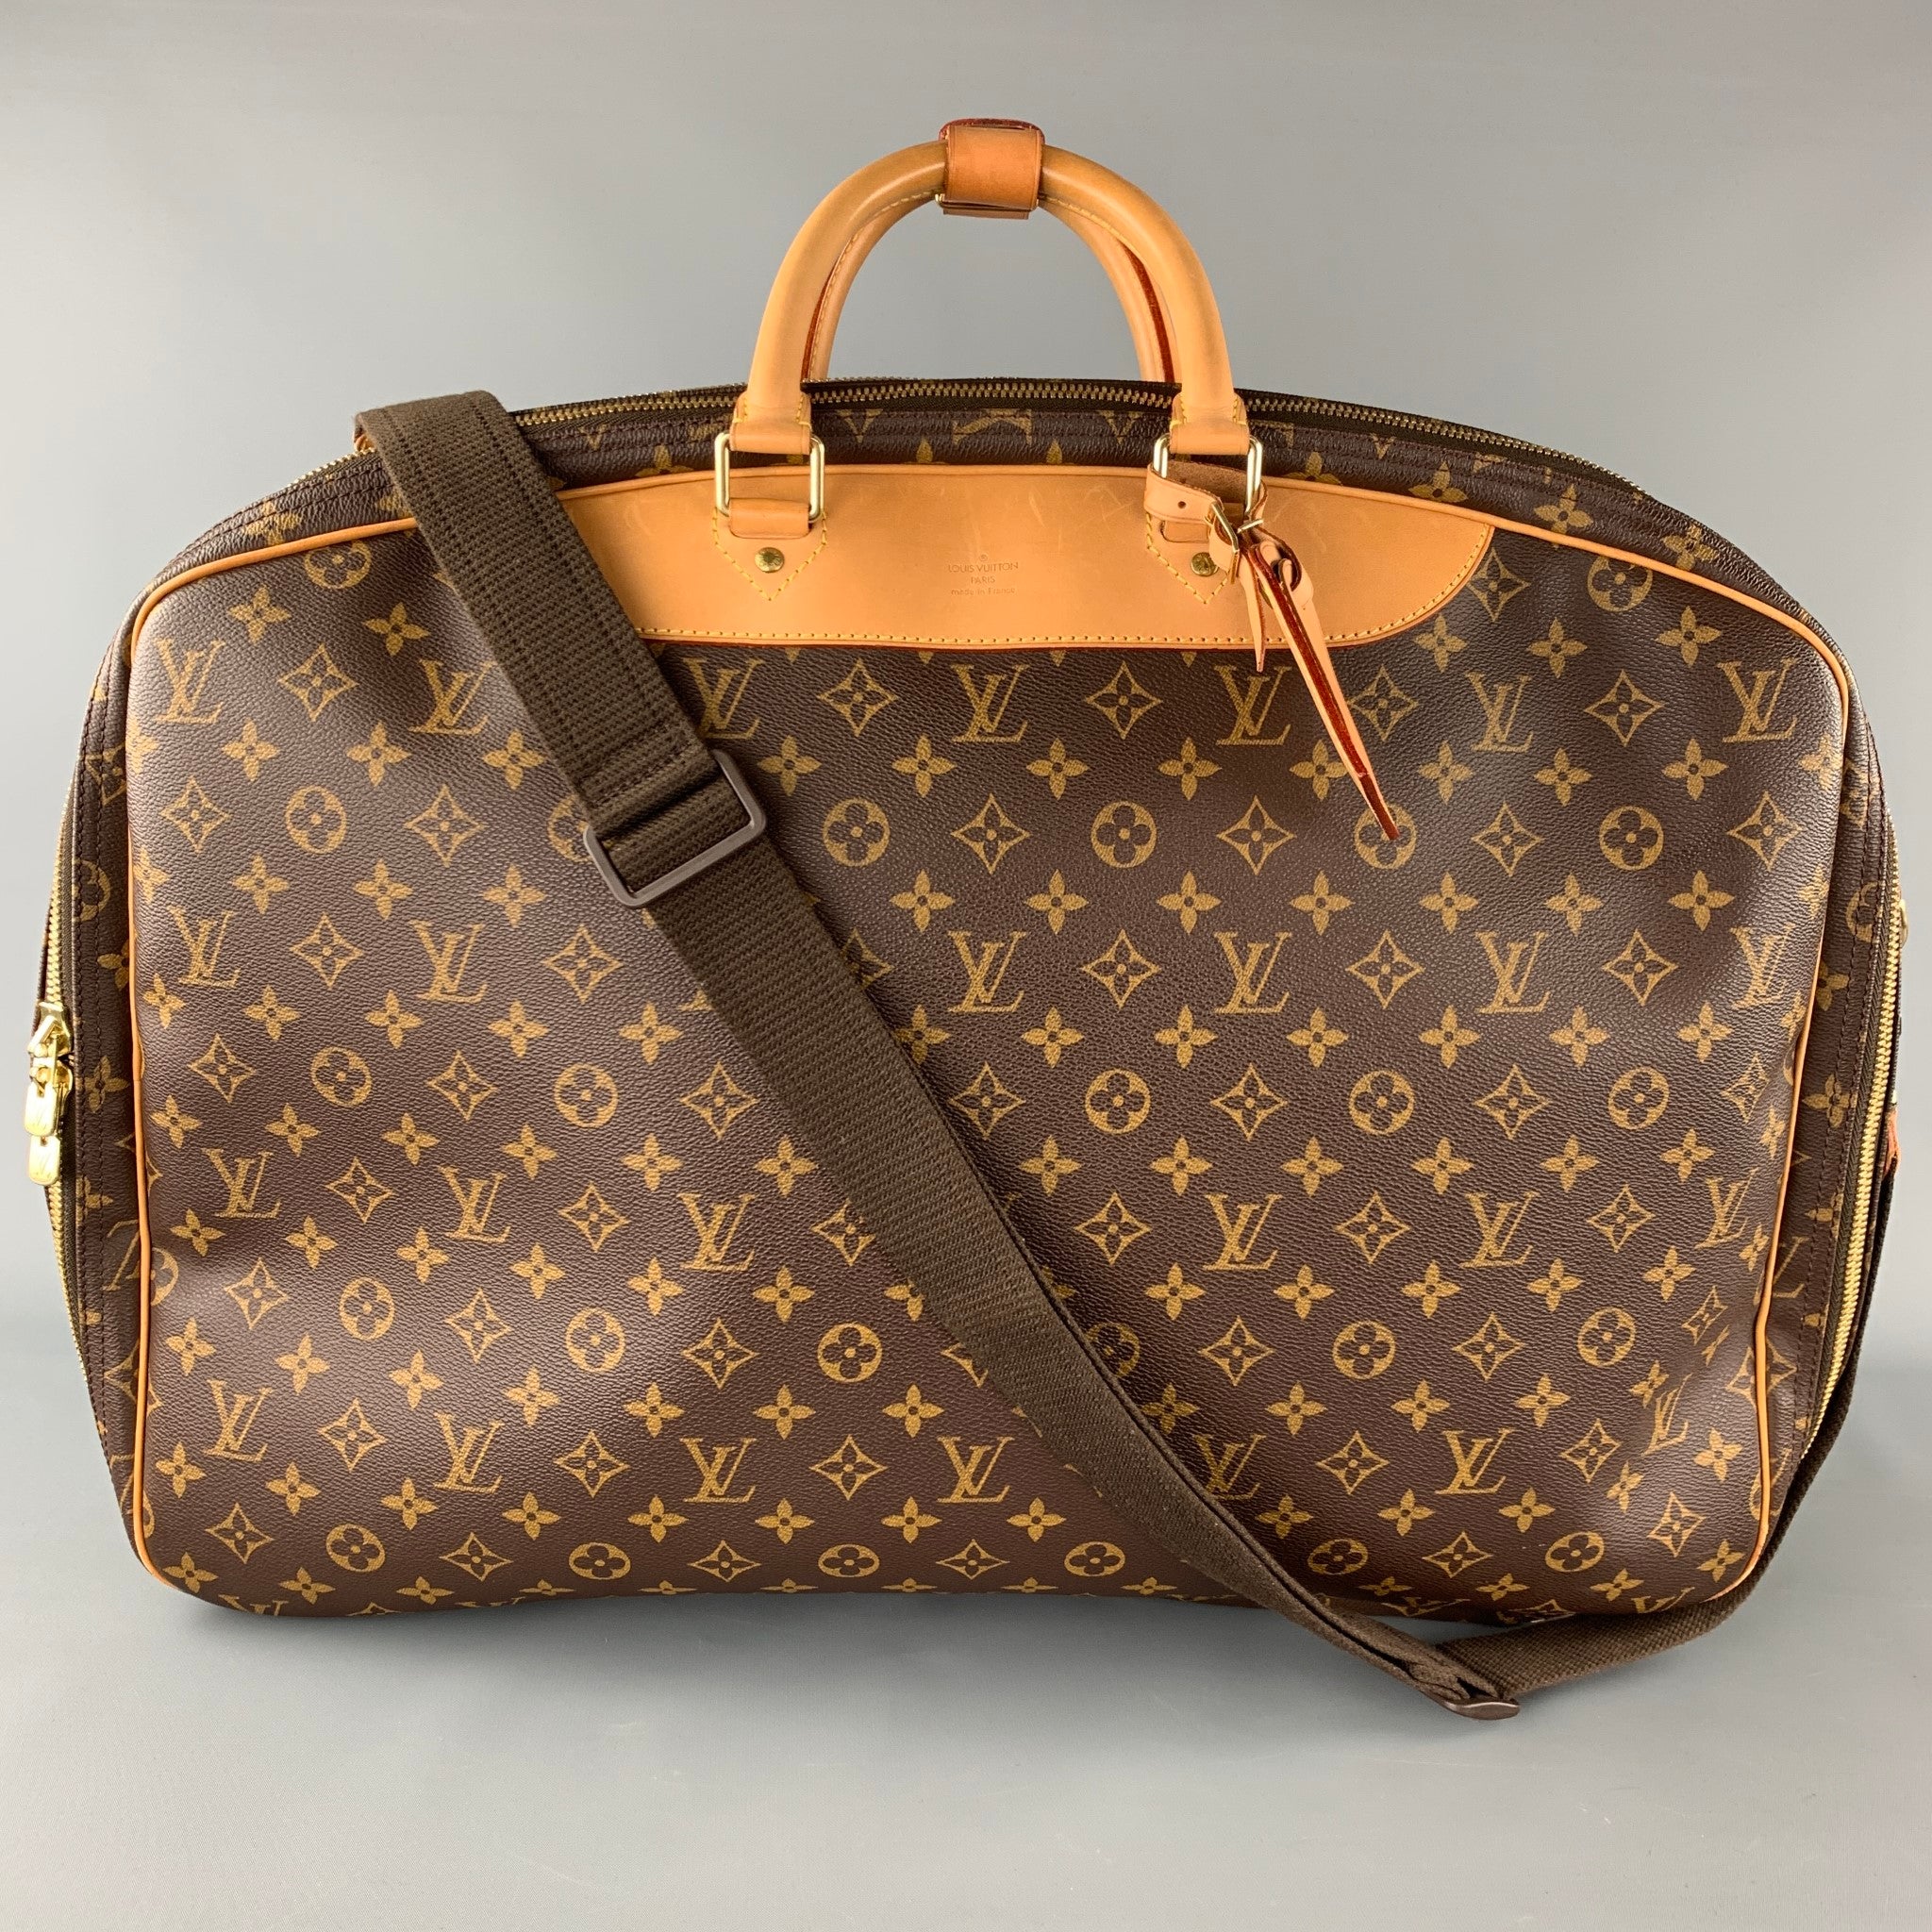 SOLD!! Louis Vuitton 3-Compartment Travel Suitcase